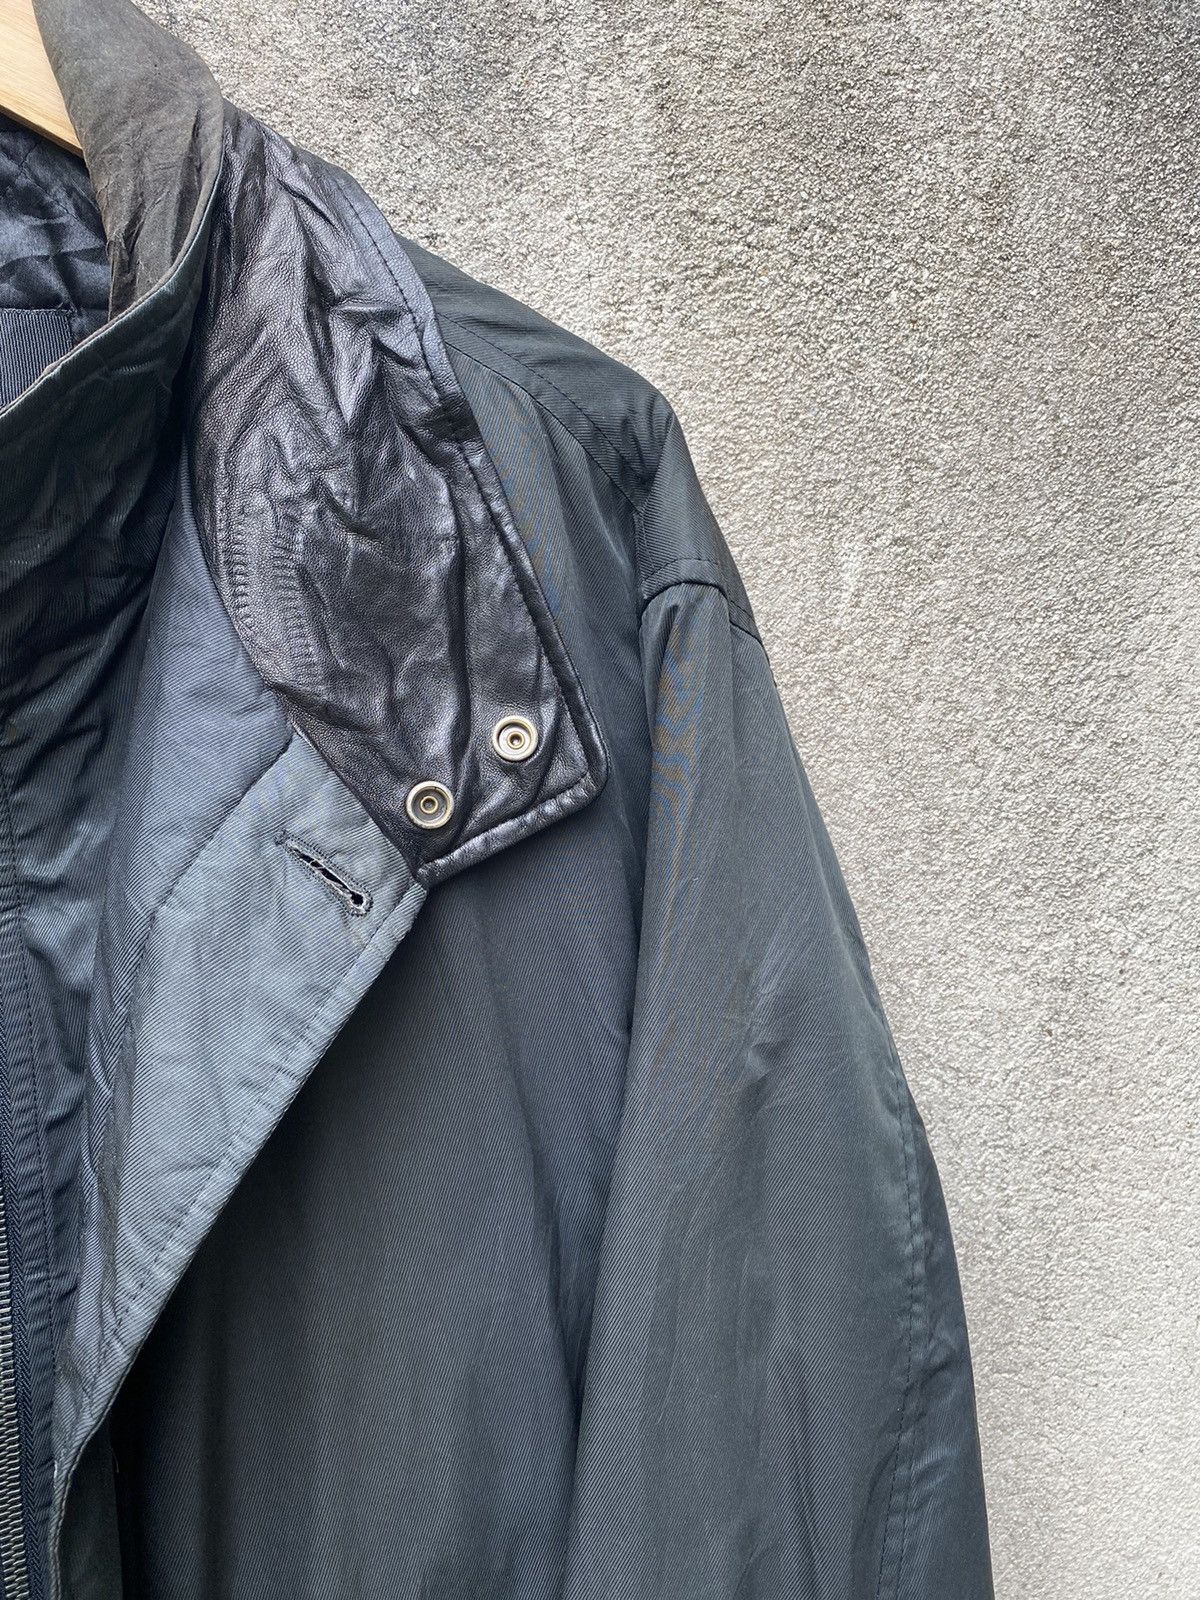 Hugo Boss Waxed Long Island Jacket Double Collar Leather - 7